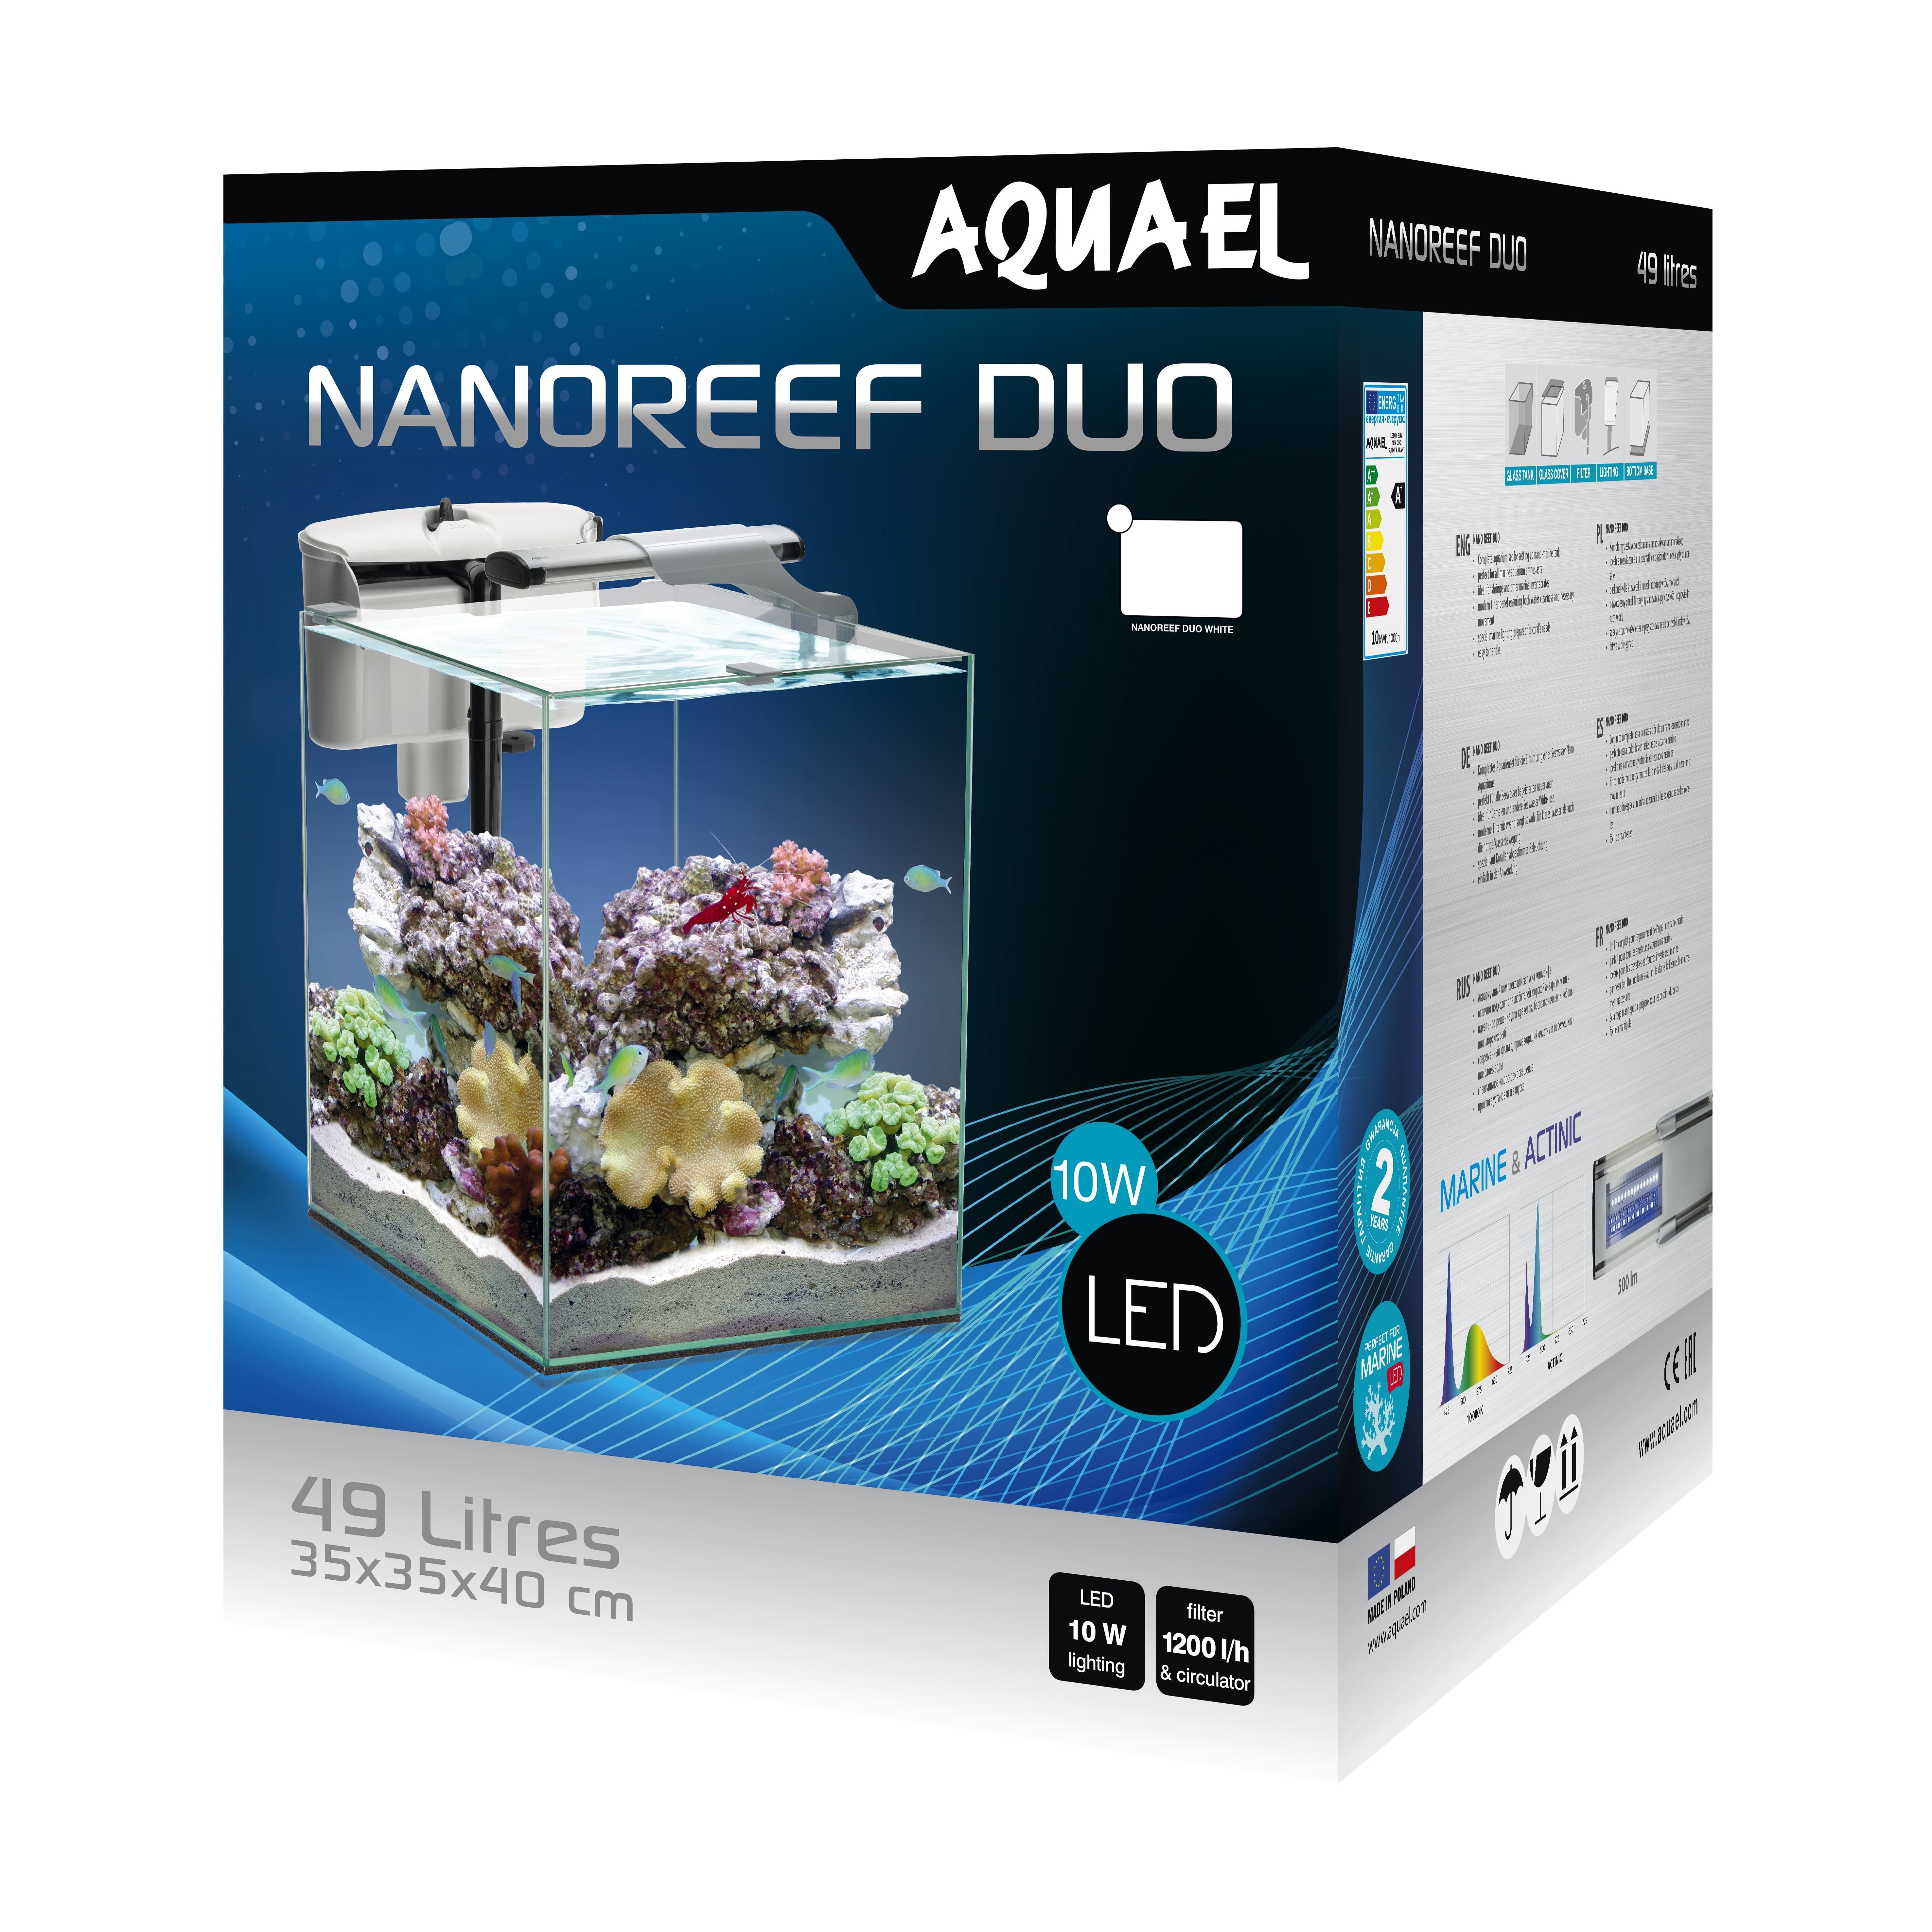 AquaEl Nano Reef Duo